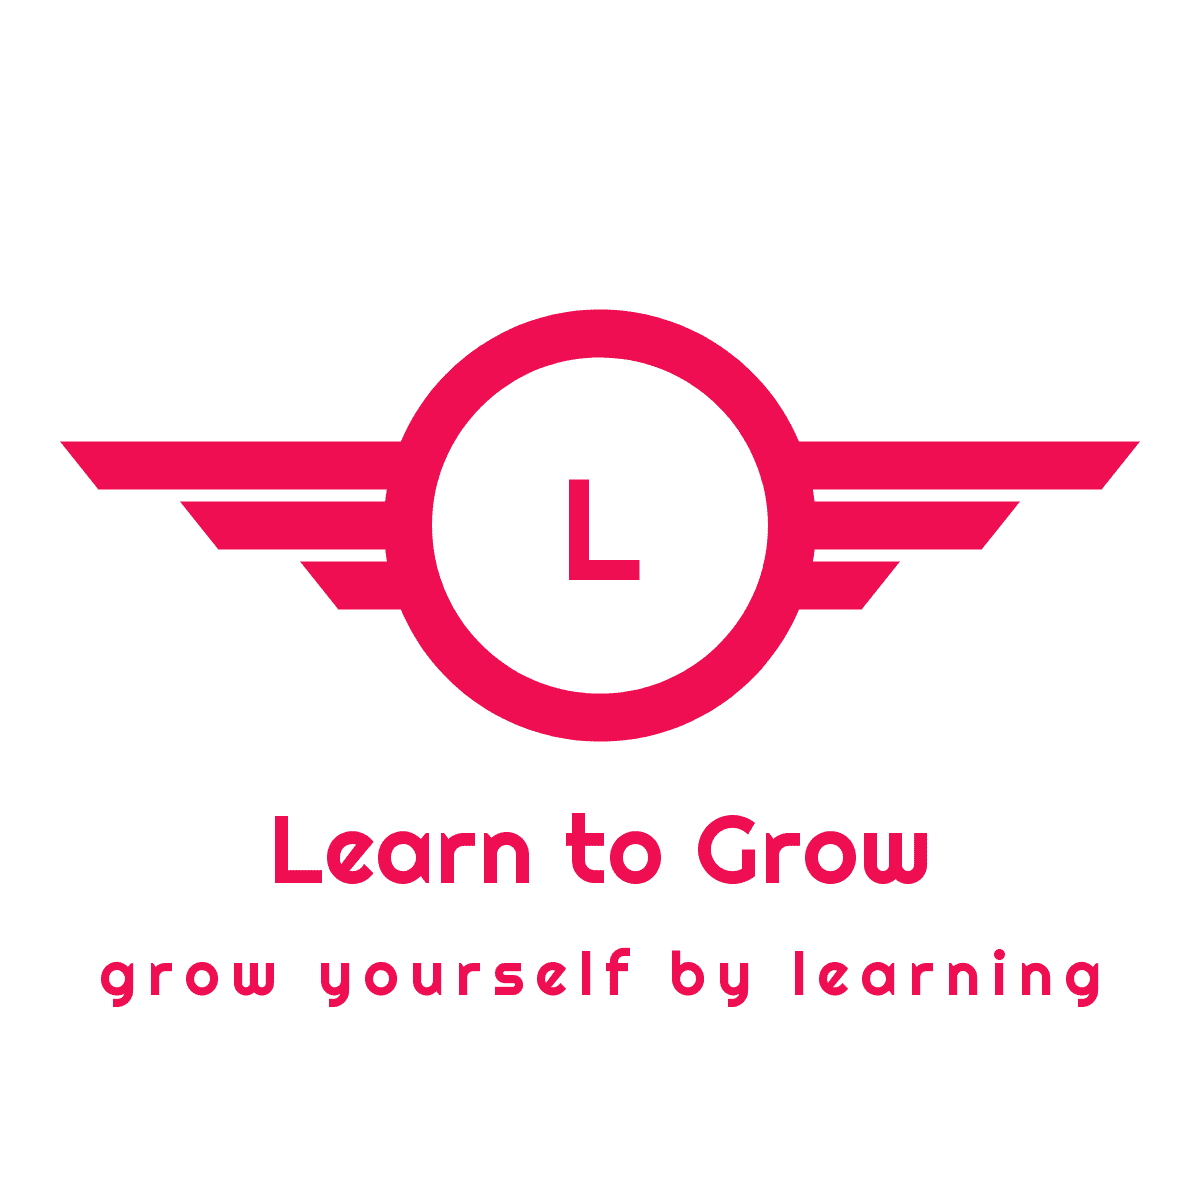 LEARN TO GROW